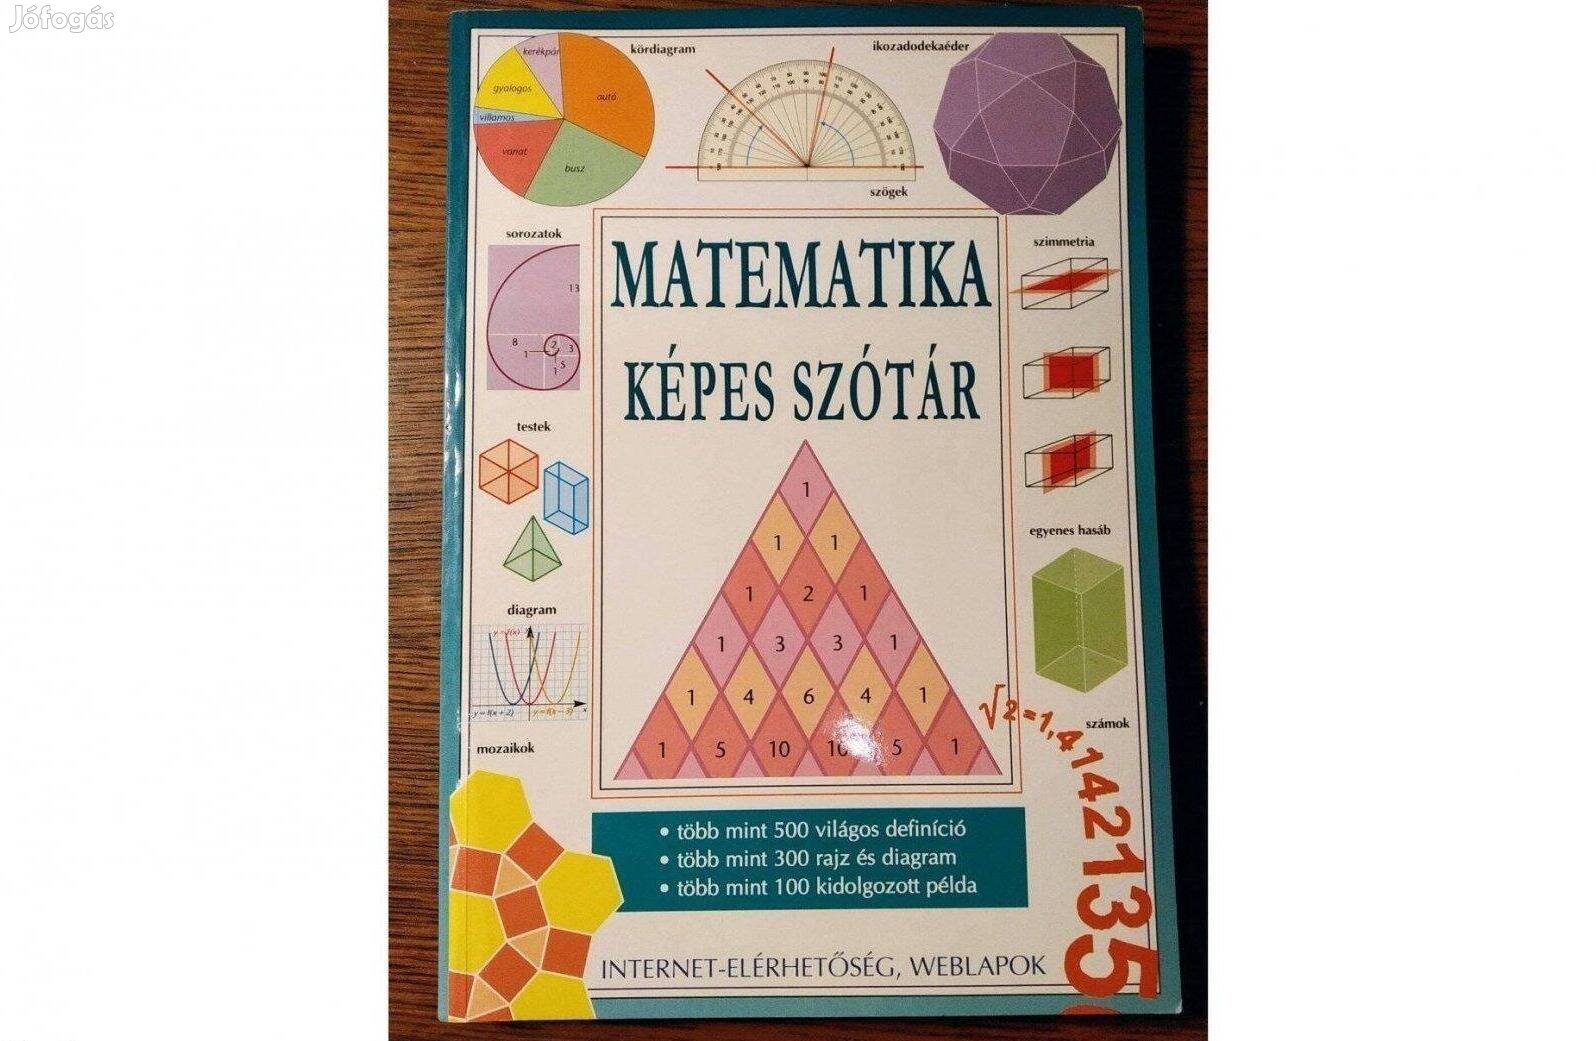 Matematika képes szótár Tori Large Novum Kiadó, 2004